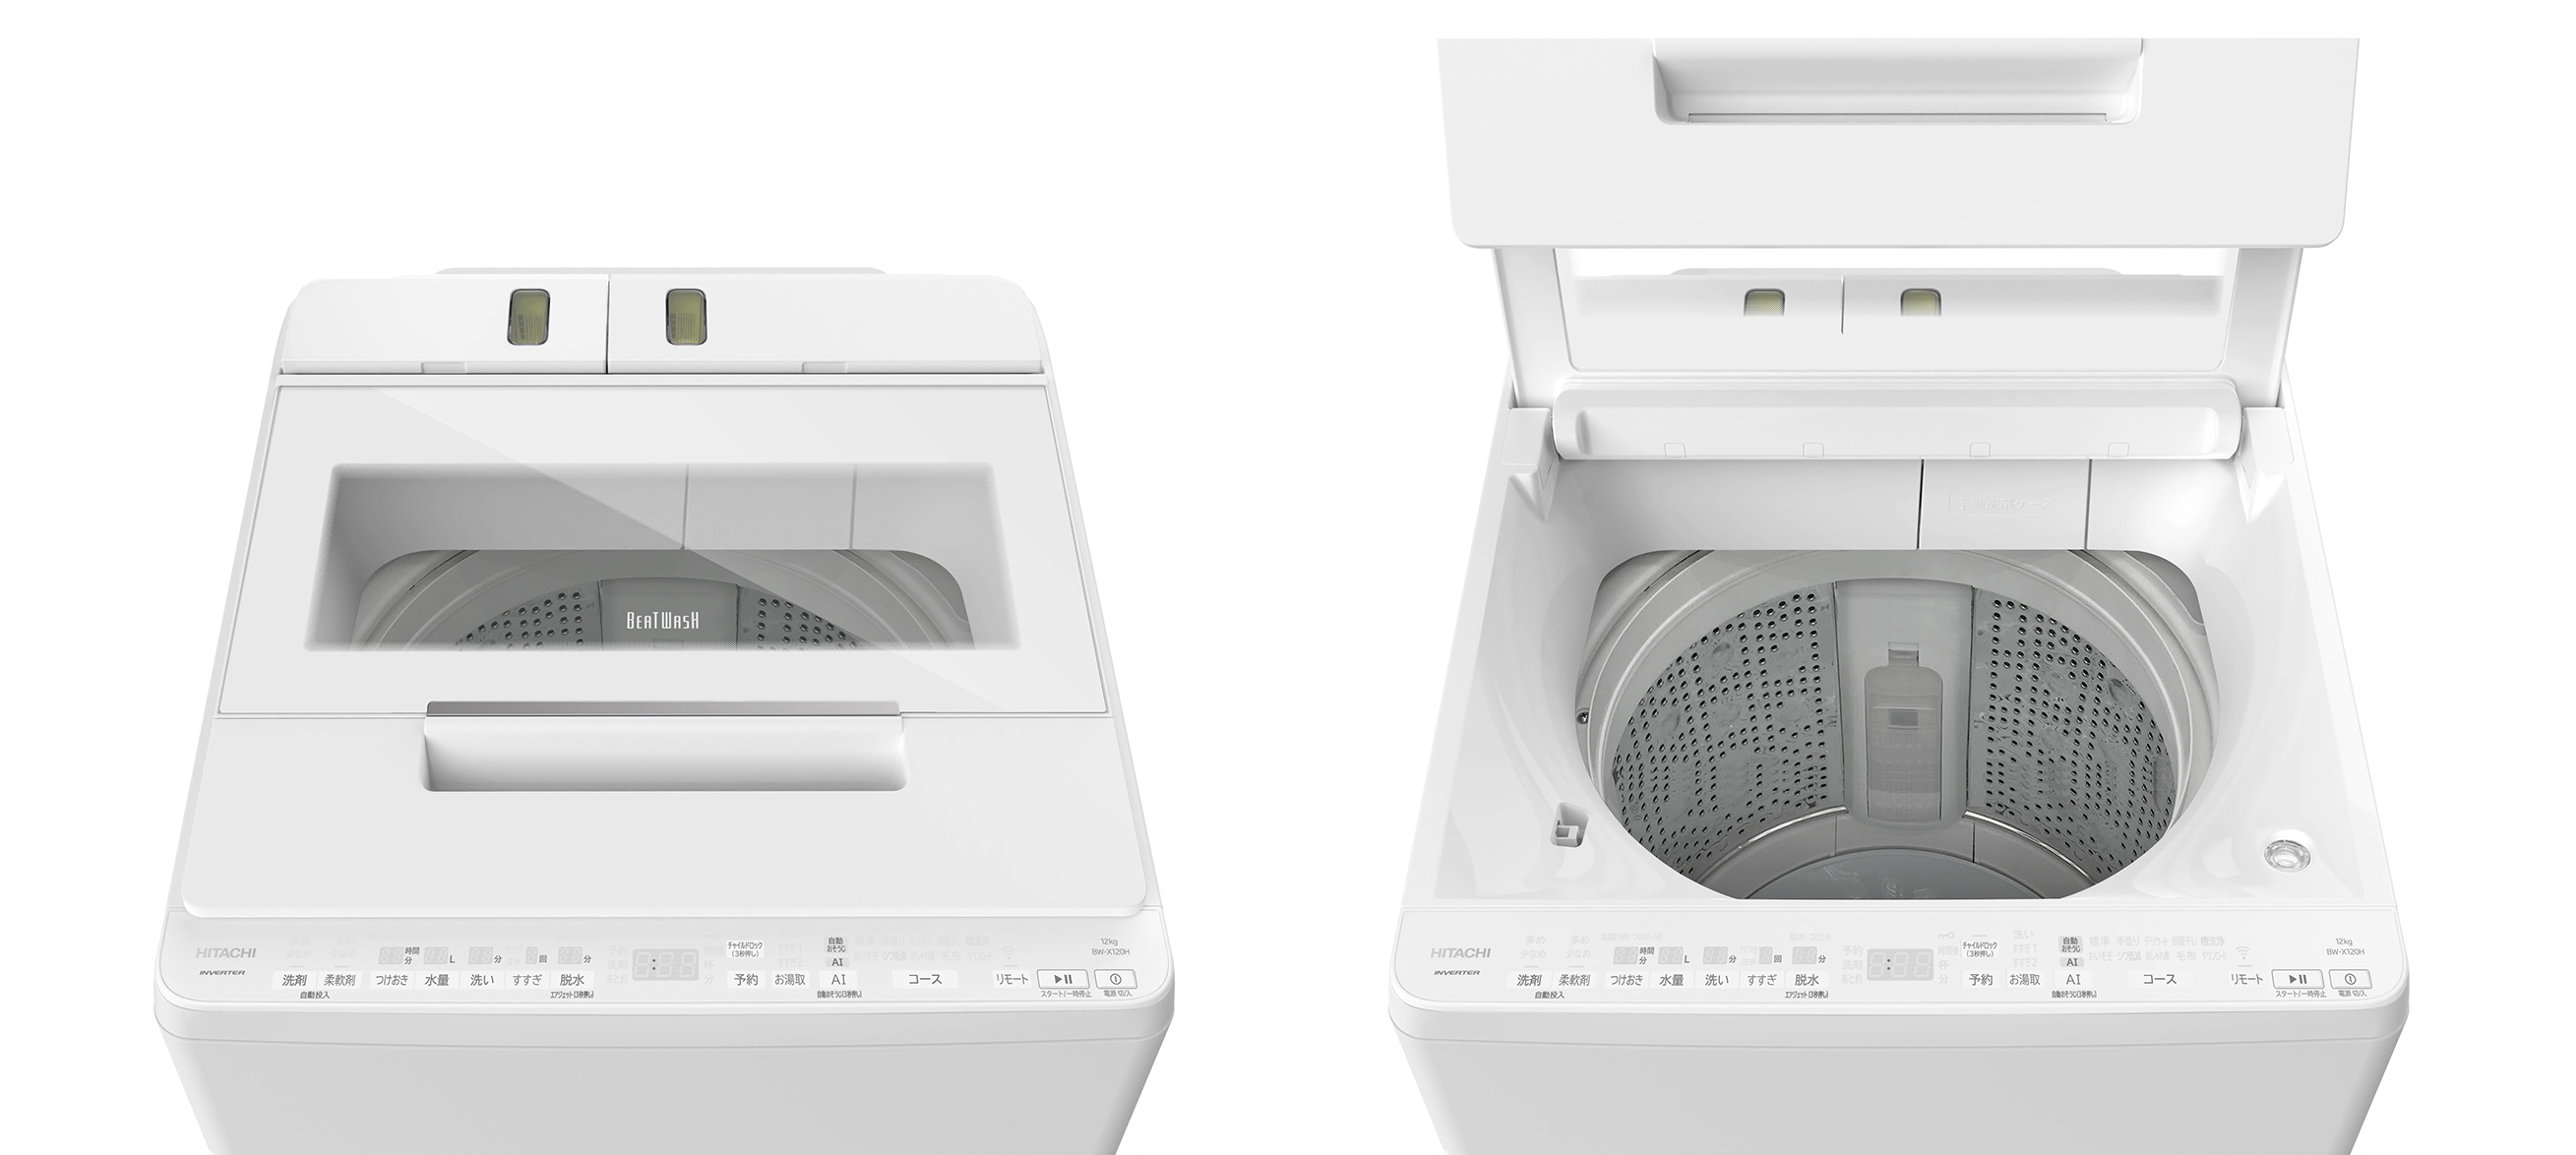 【専用】女性ユーザー使用 冷蔵庫2018年 洗濯機2018年 セット